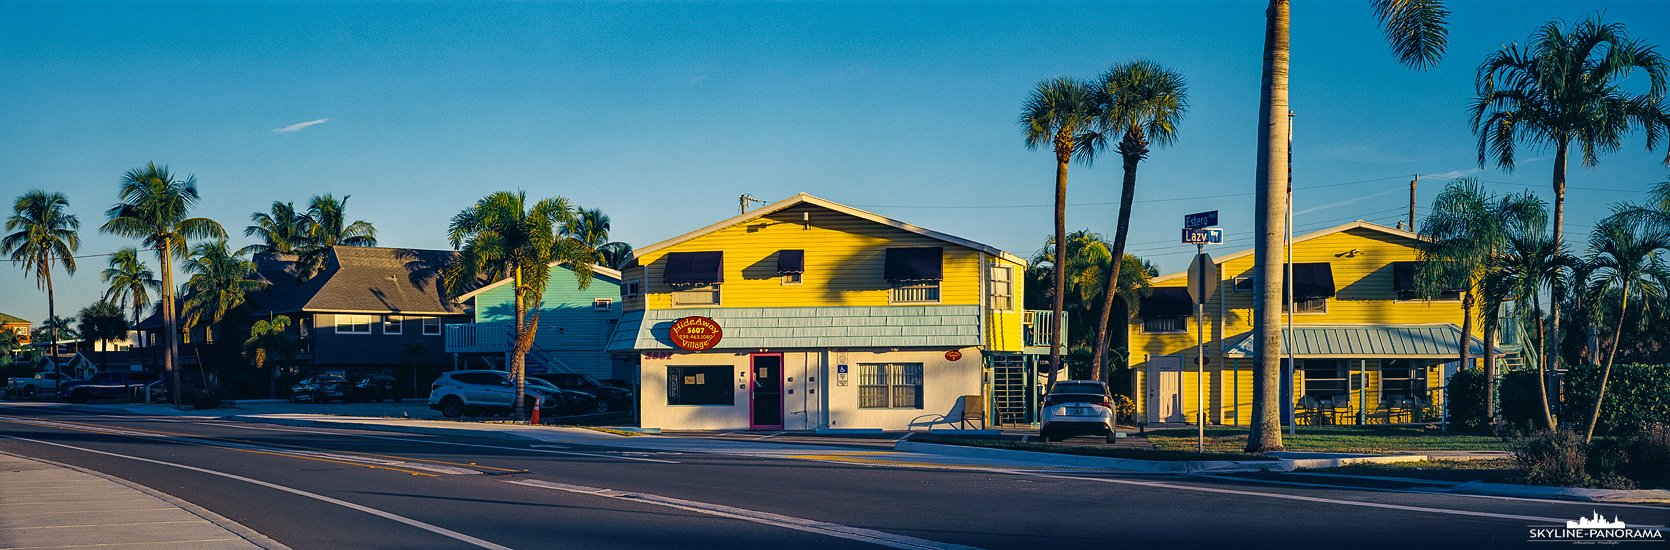 Florida Panorama - Hideaway Village Motel in den für Florida typischen Farben, gesehen in Fort Myers Beach im November 2021.